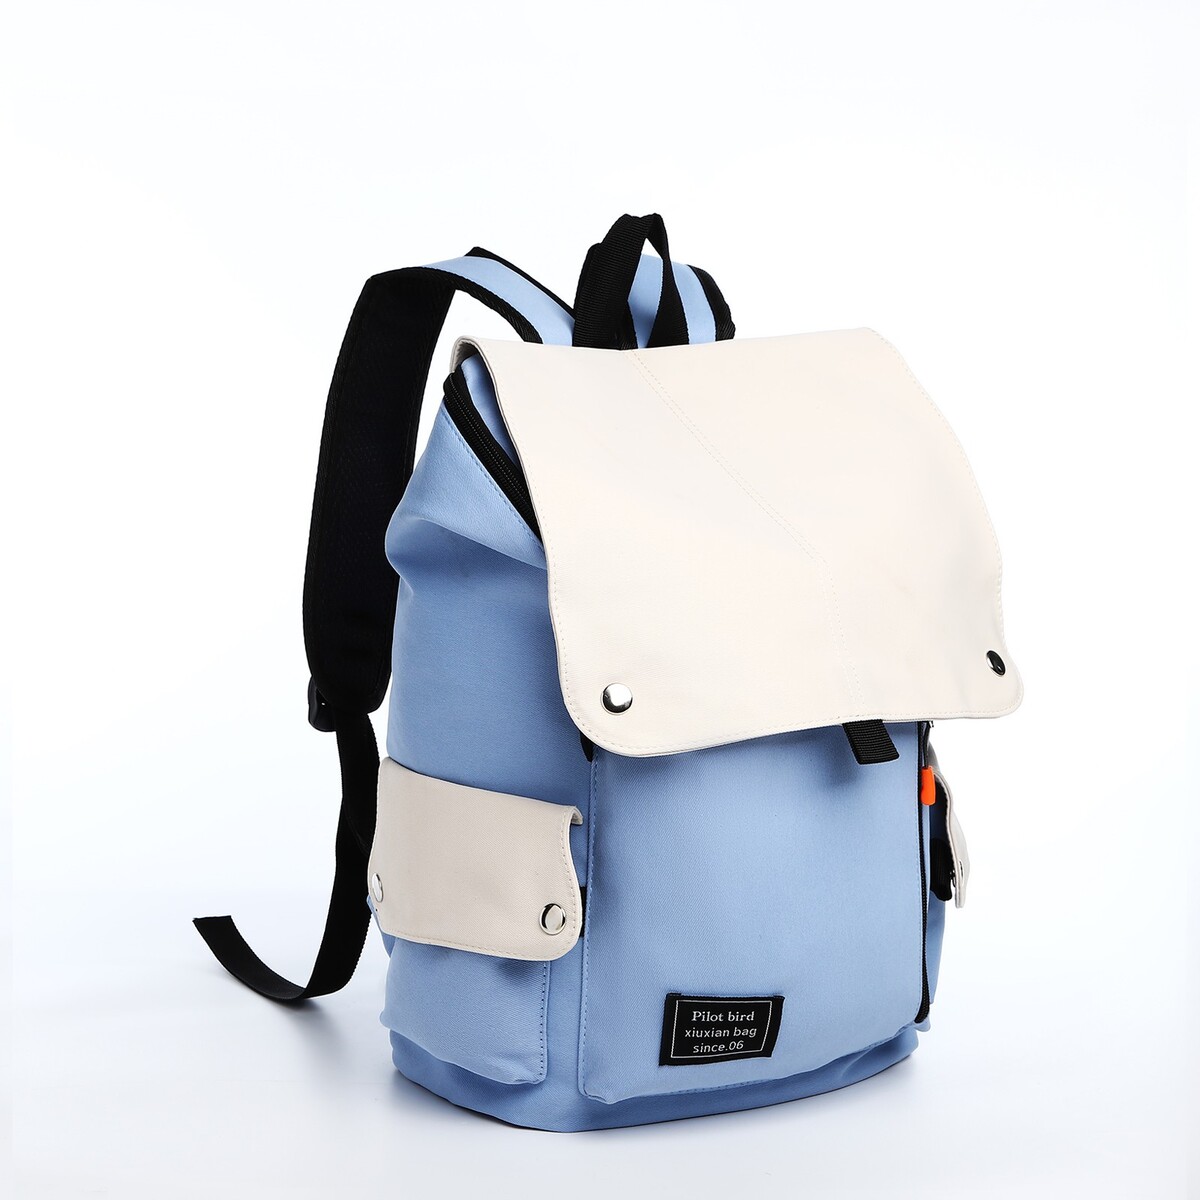 Рюкзак на молнии, 5 наружных кармана, цвет бежевый/голубой рюкзак молодежный из текстиля на молнии 3 кармана серо бежевый